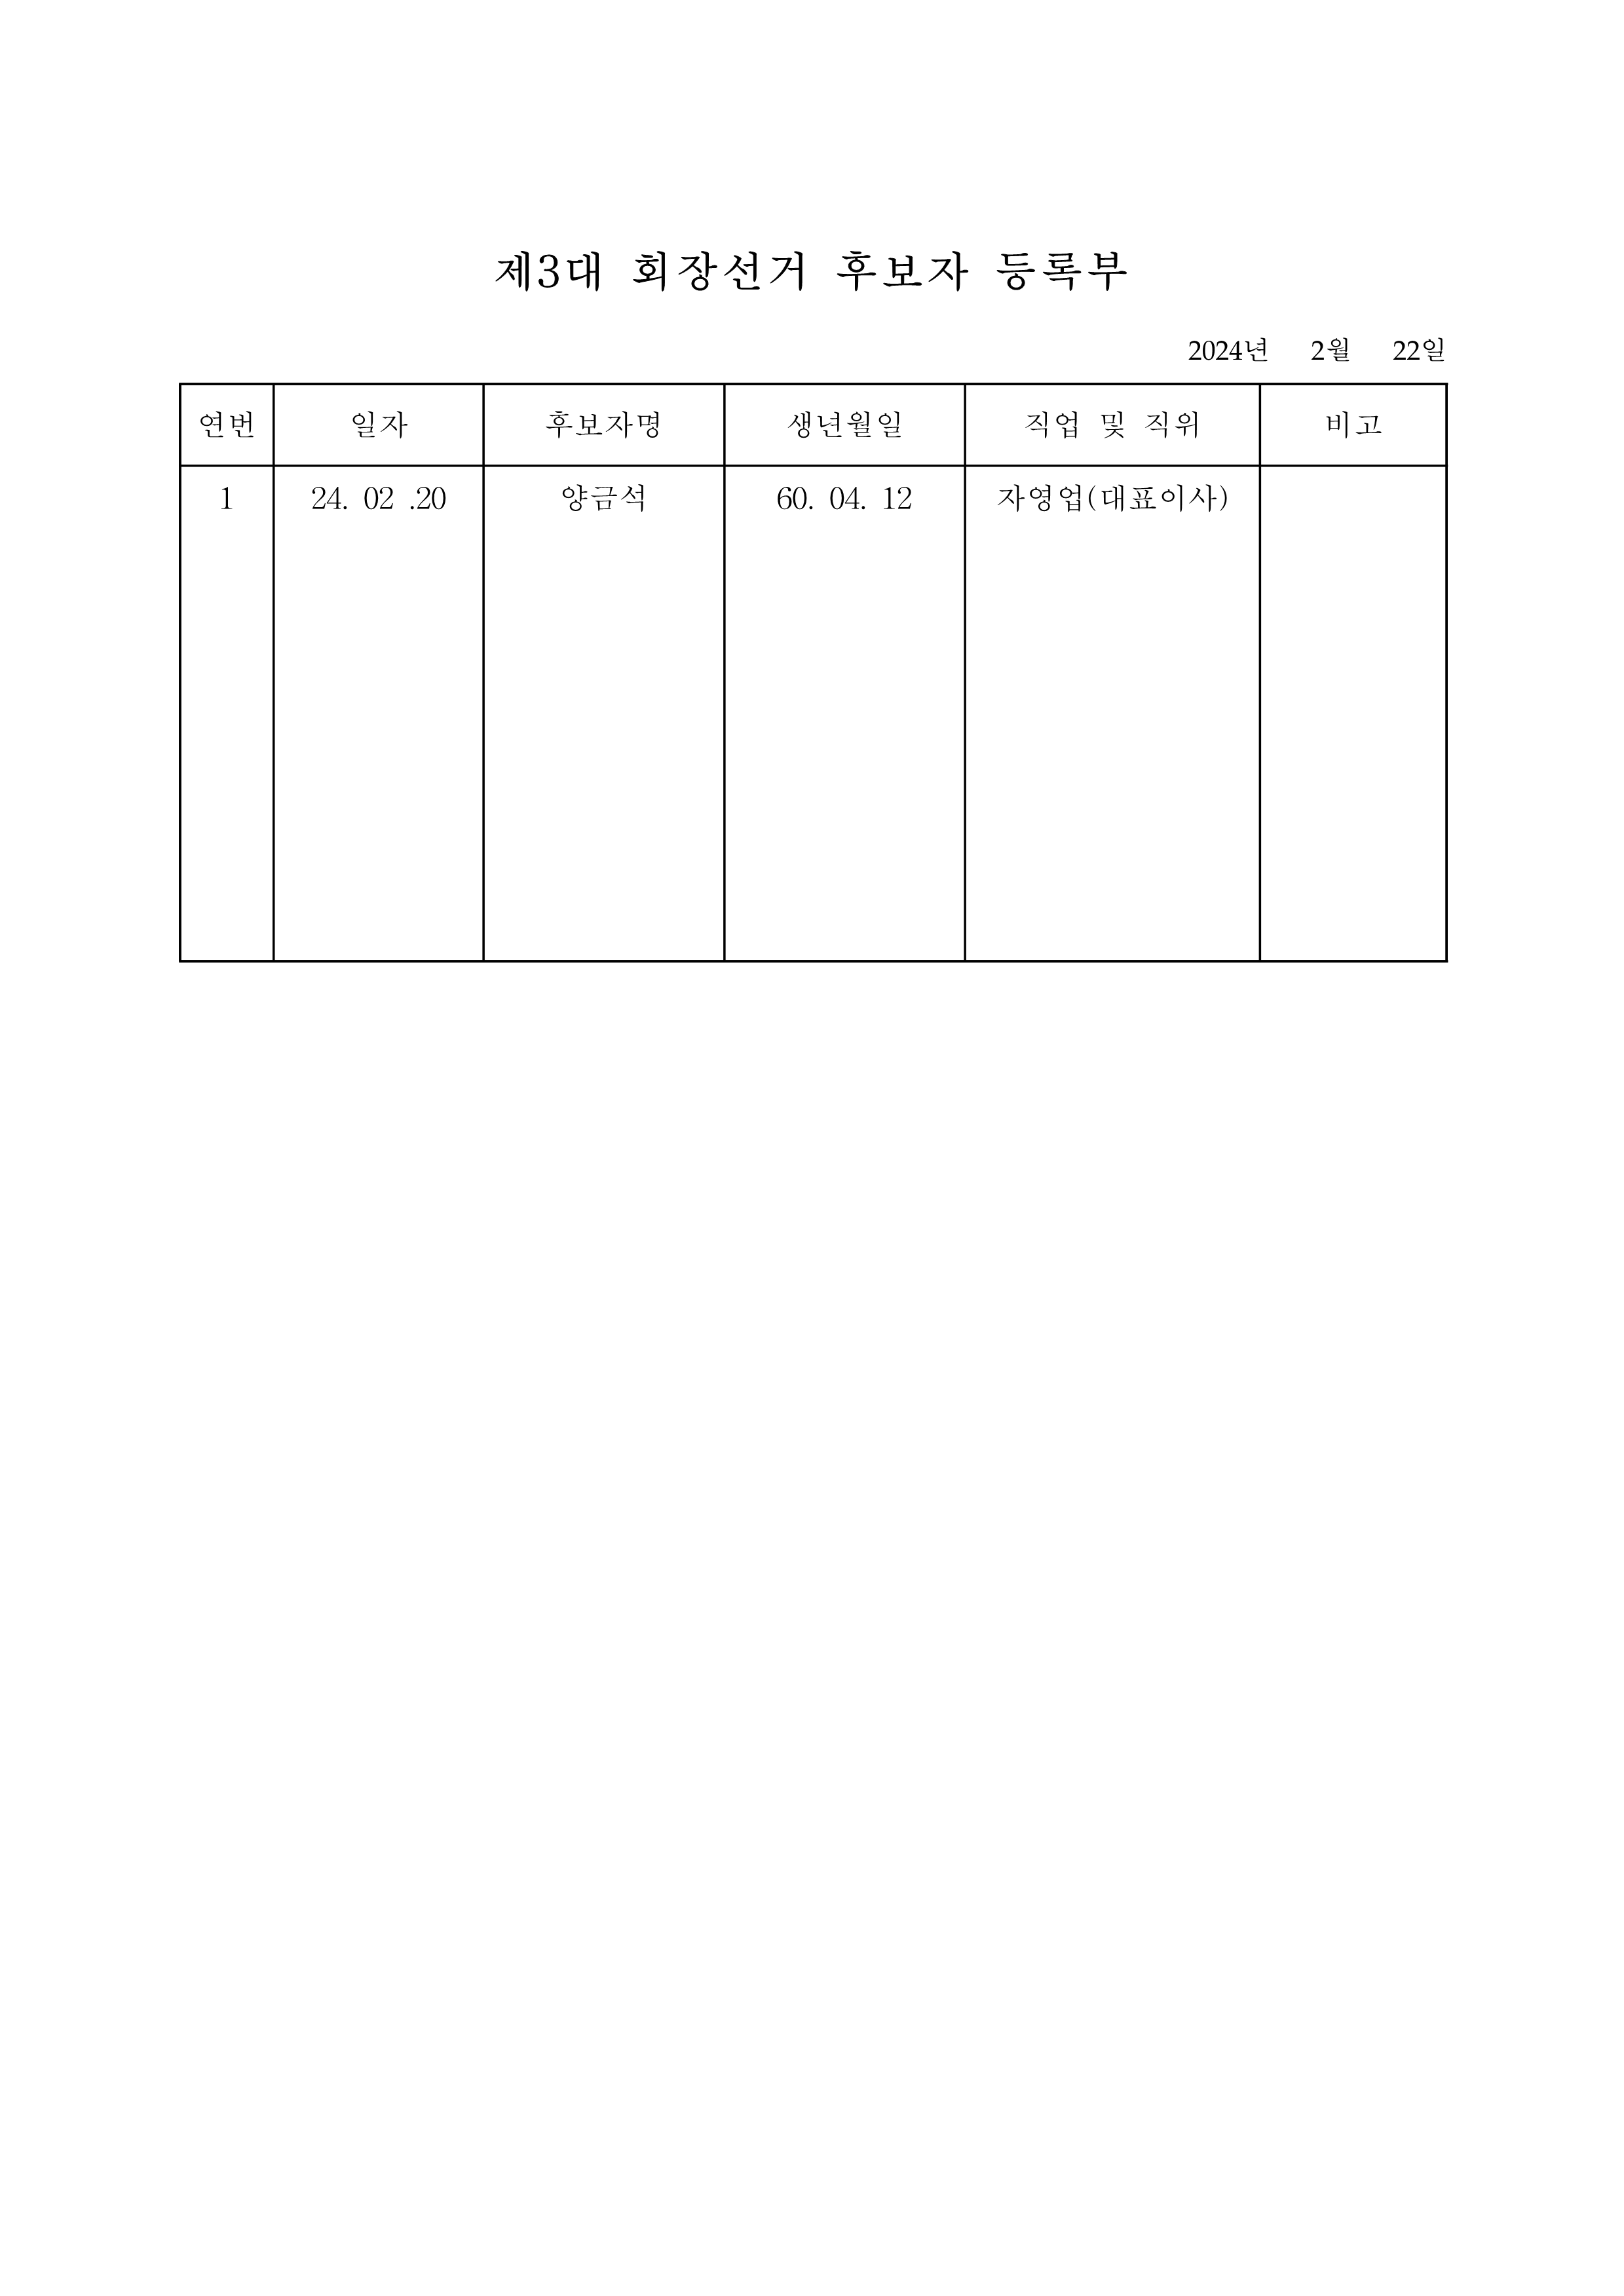 (24-09)금천구족구협회 회장 선거 후보자 등록 공고 게시 요청_1.png